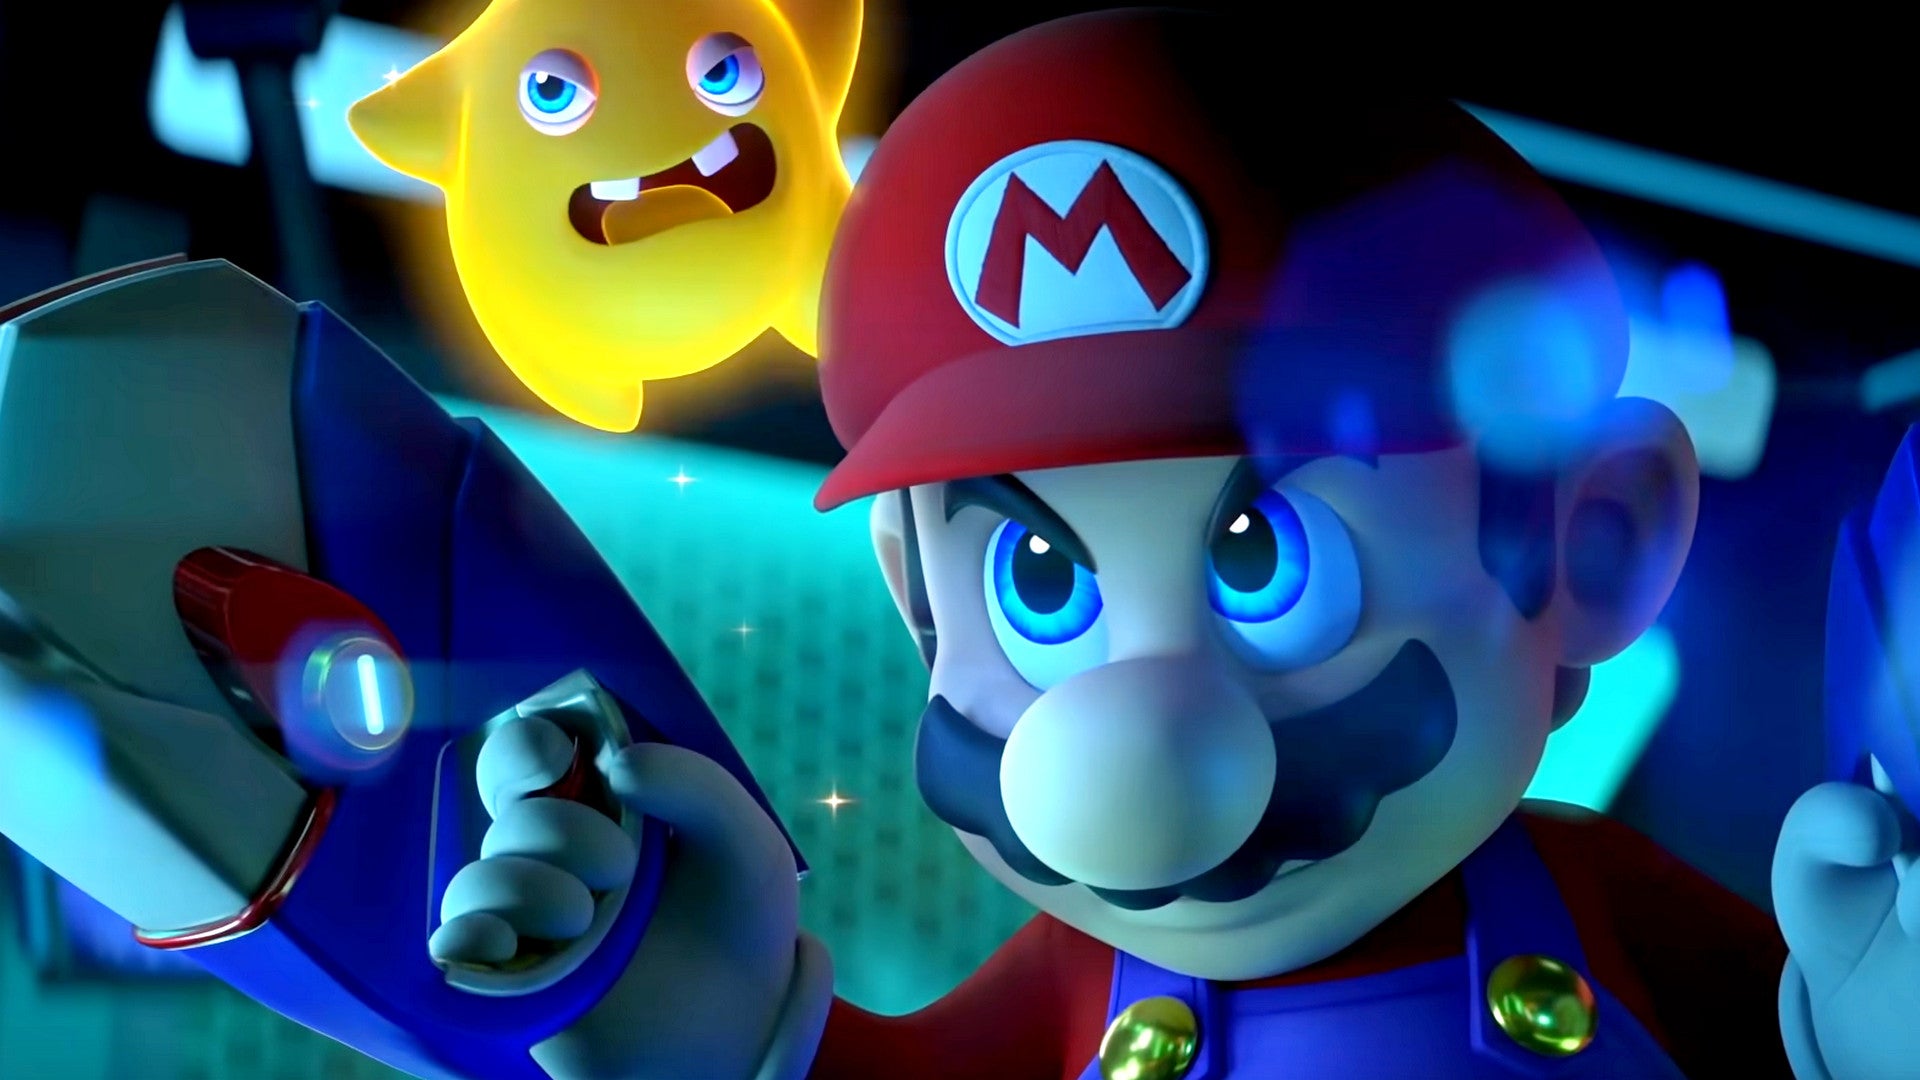 Wird-Mario-Rabbids-Sparks-of-Hope-das-beste-Ubisoft-Spiel-seit-Jahren-Ich-bleibe-noch-skeptisch